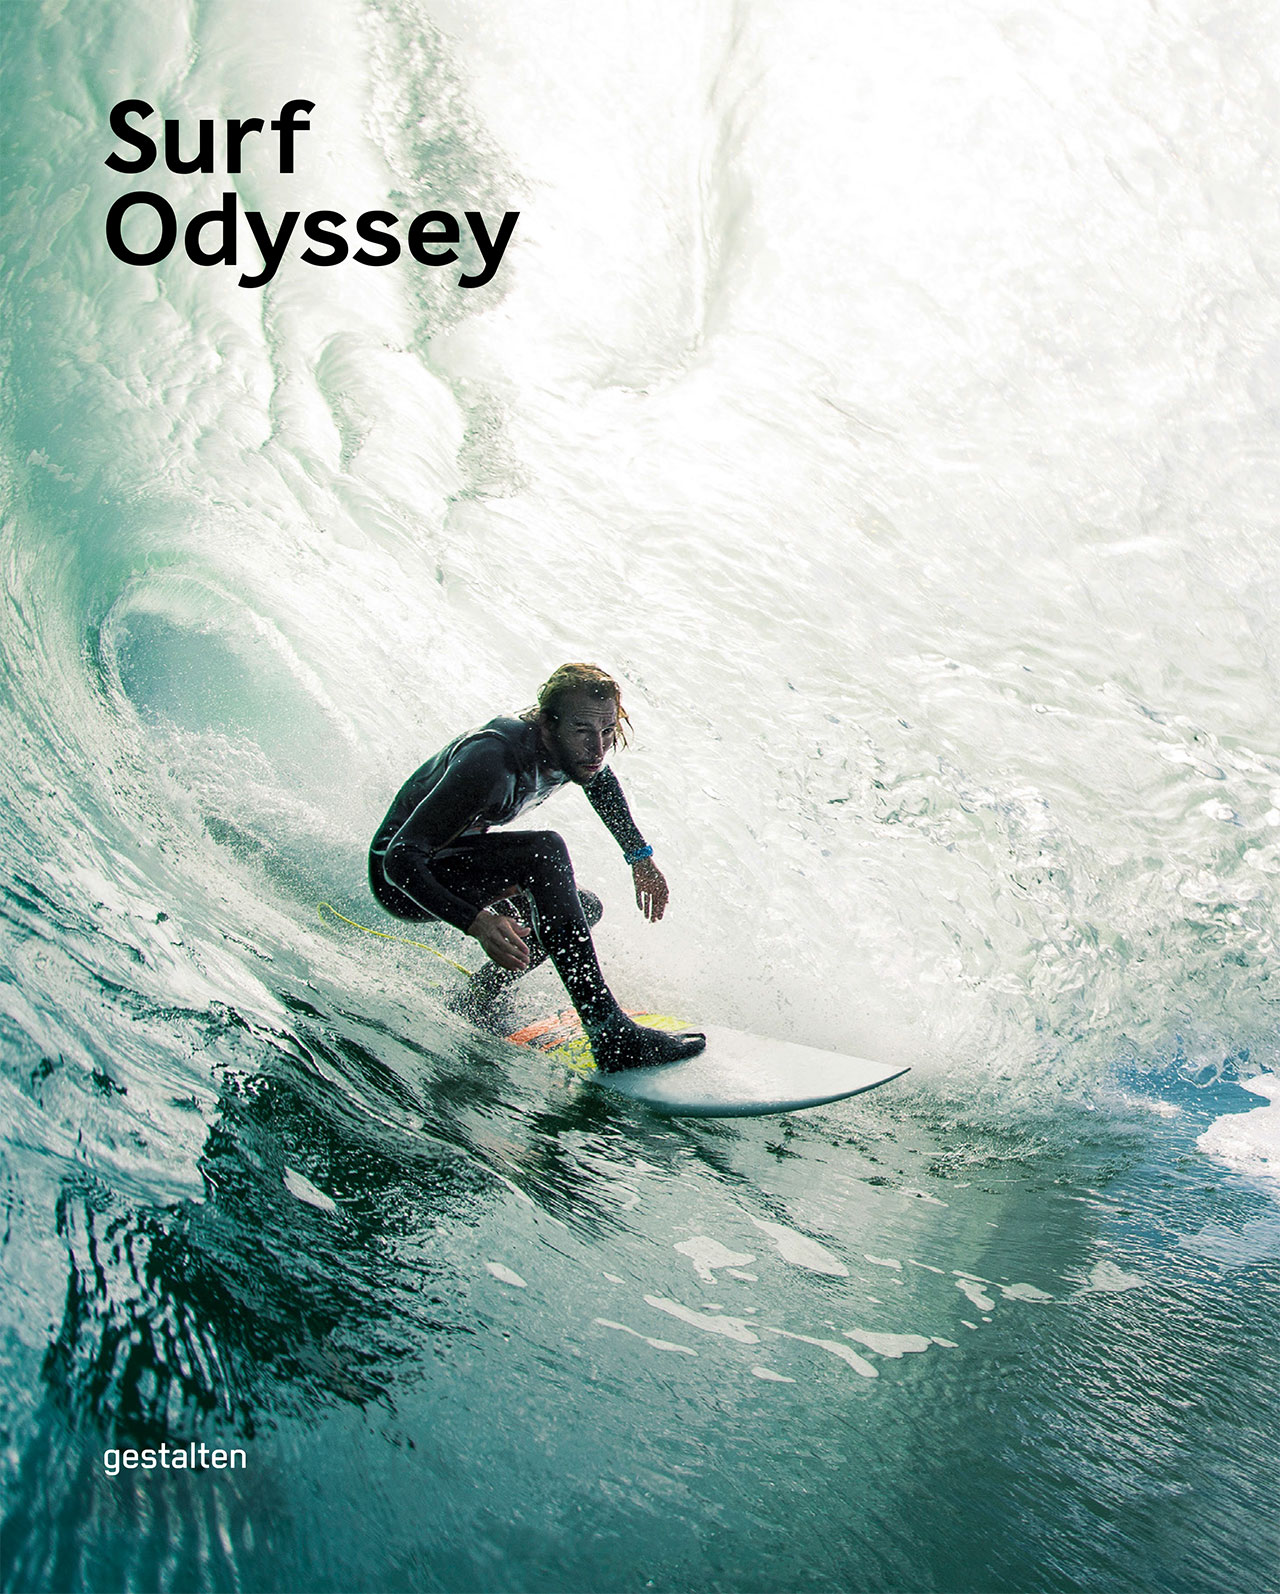 s2_surf_odyssey_gestalten_cover_yatzer